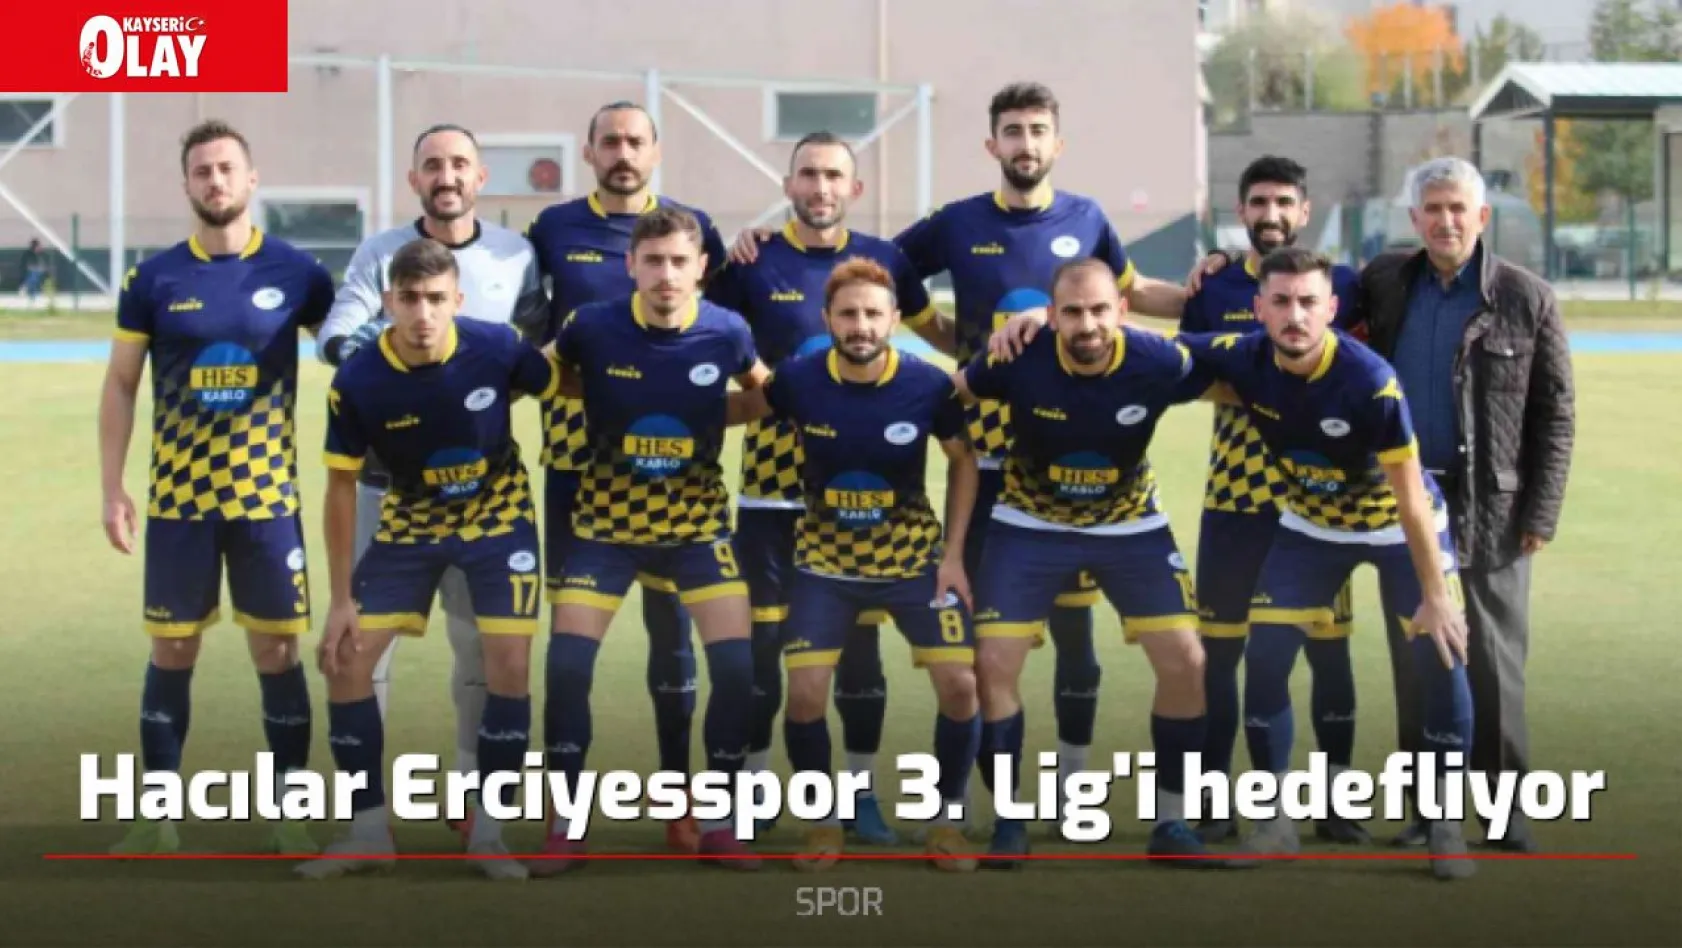 Hacılar Erciyesspor 3. Lig'i hedefliyor